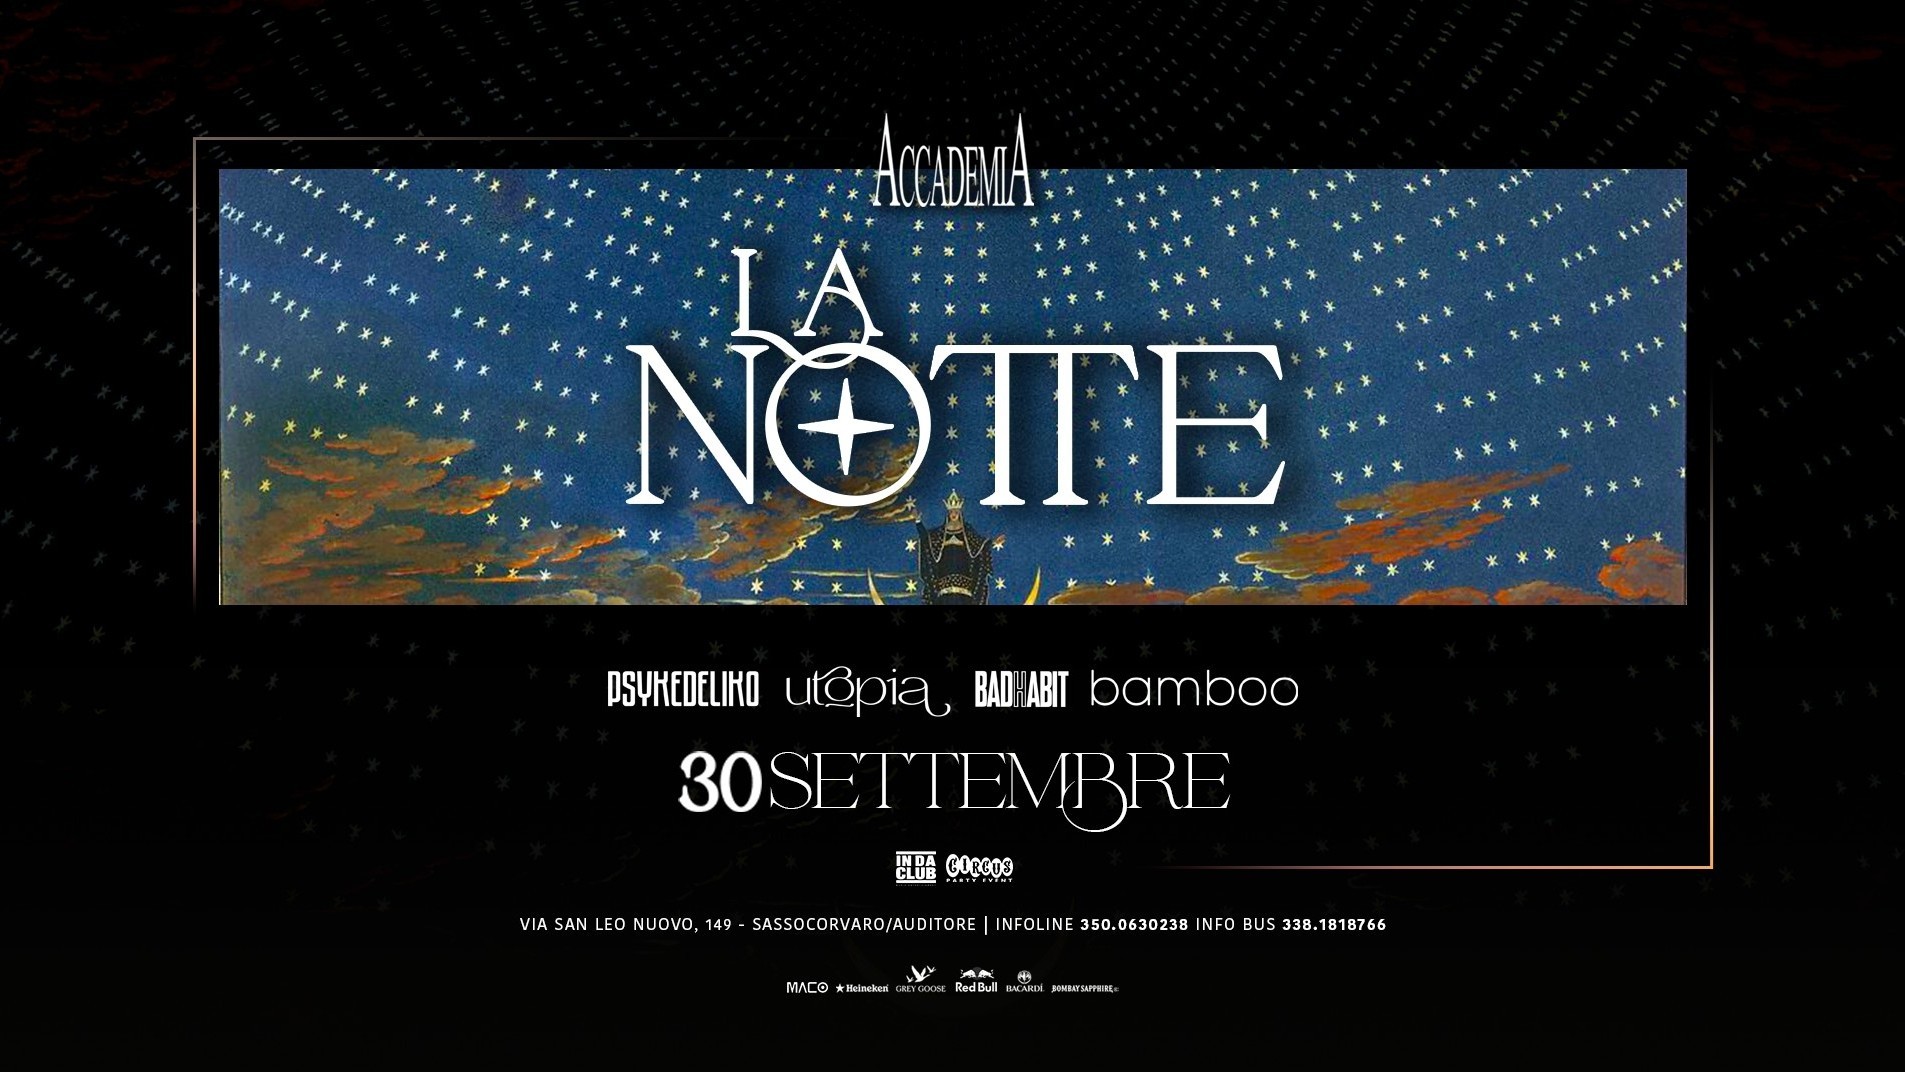 La Notte - Winter Season Opening